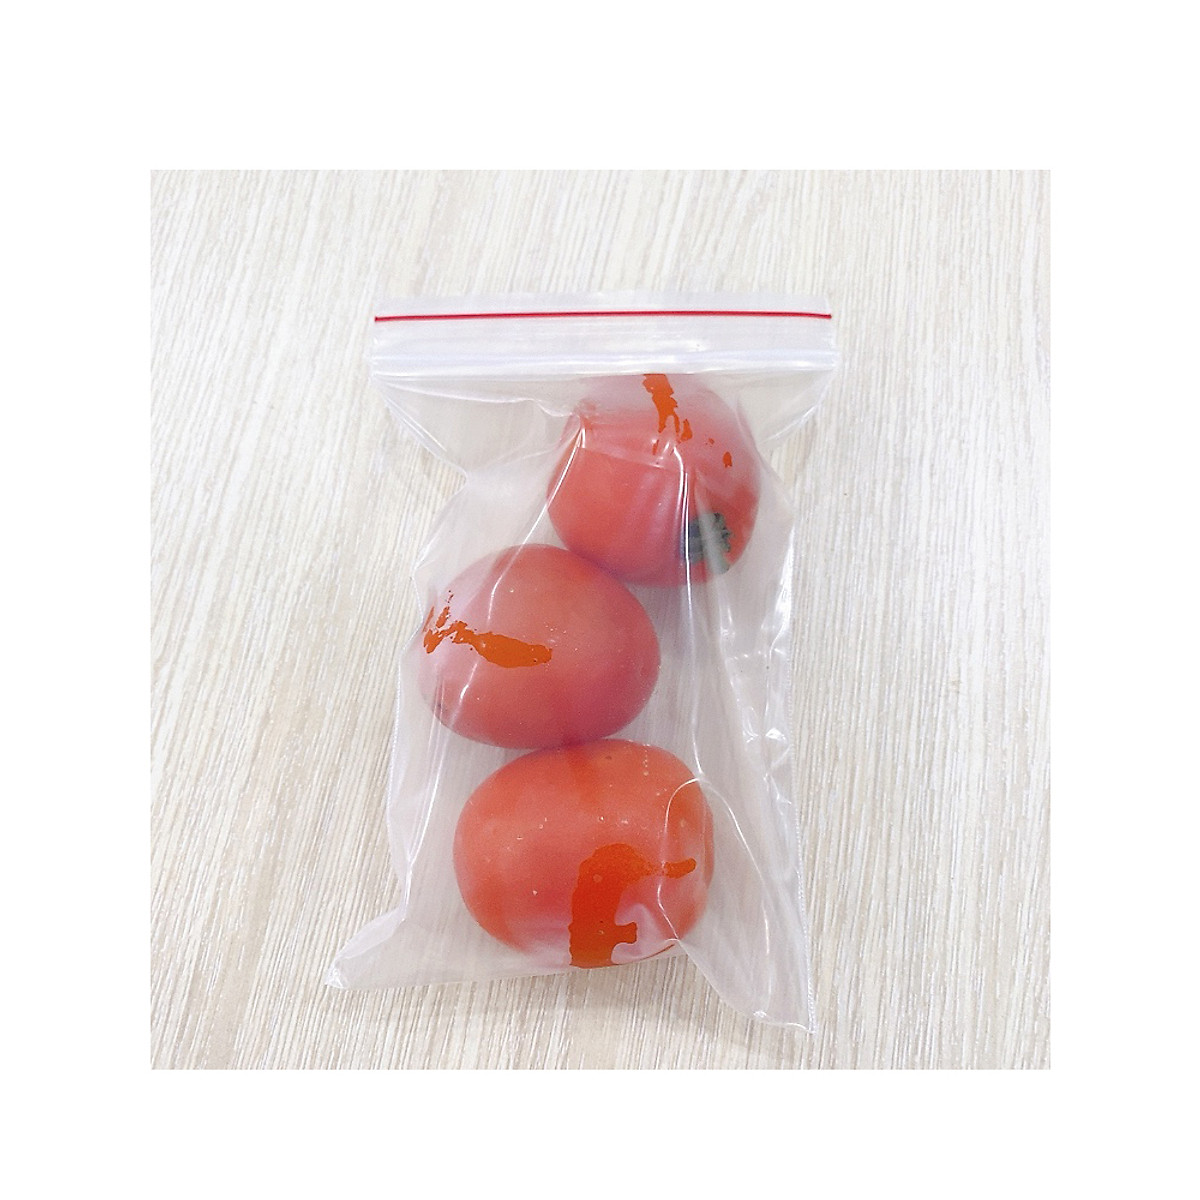 1 kg] Túi zipper chỉ đỏ loại dày đẹp dùng để gói thực phẩm, thuốc tây,